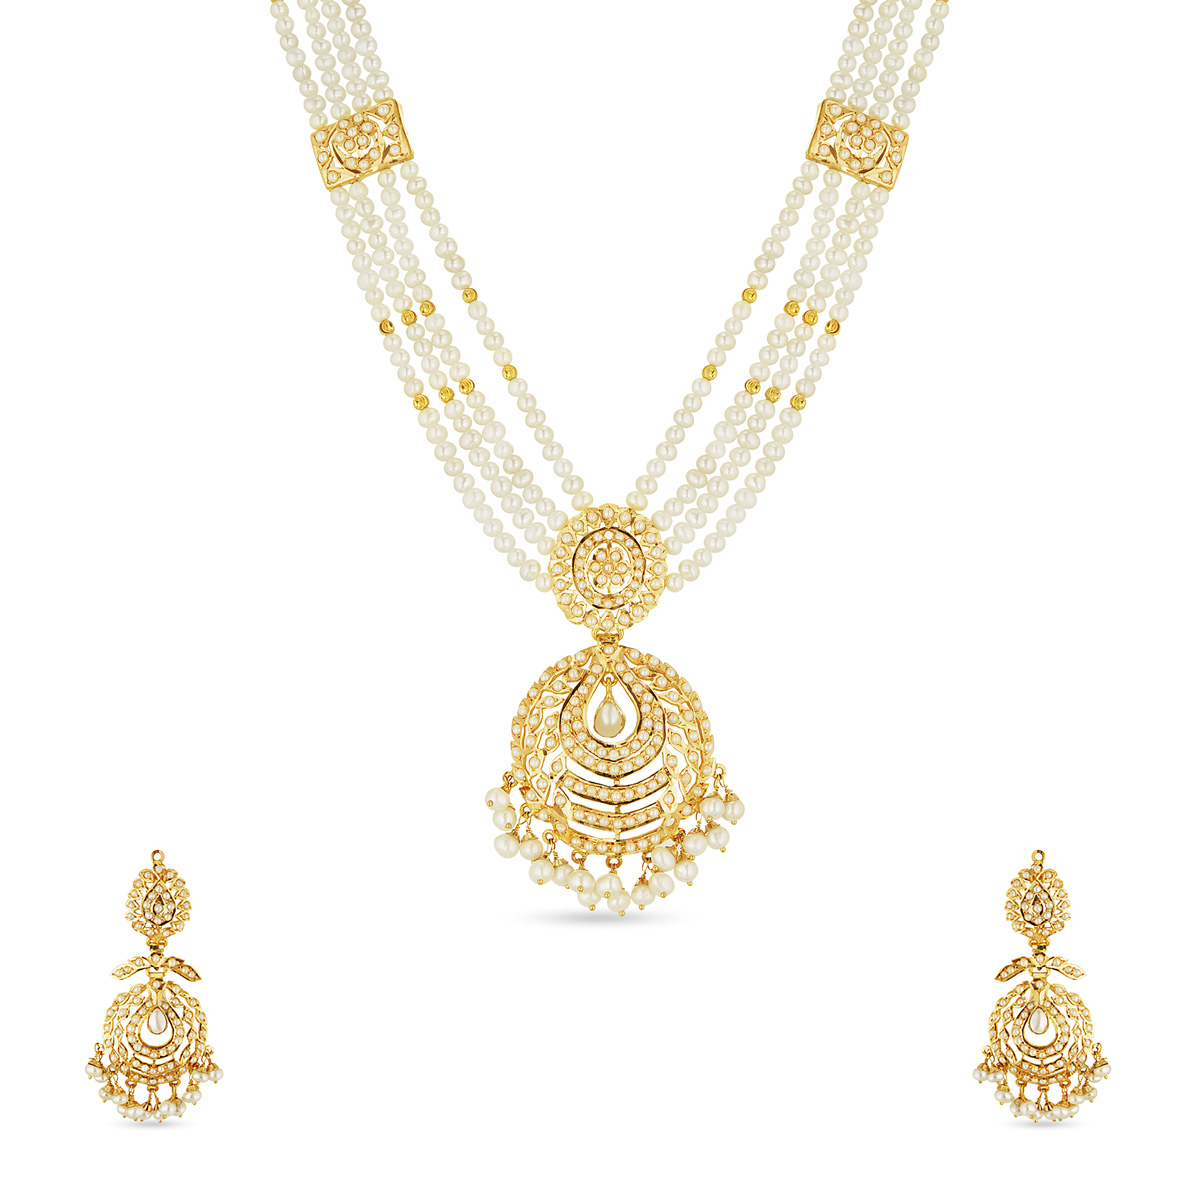 Shanthini necklace